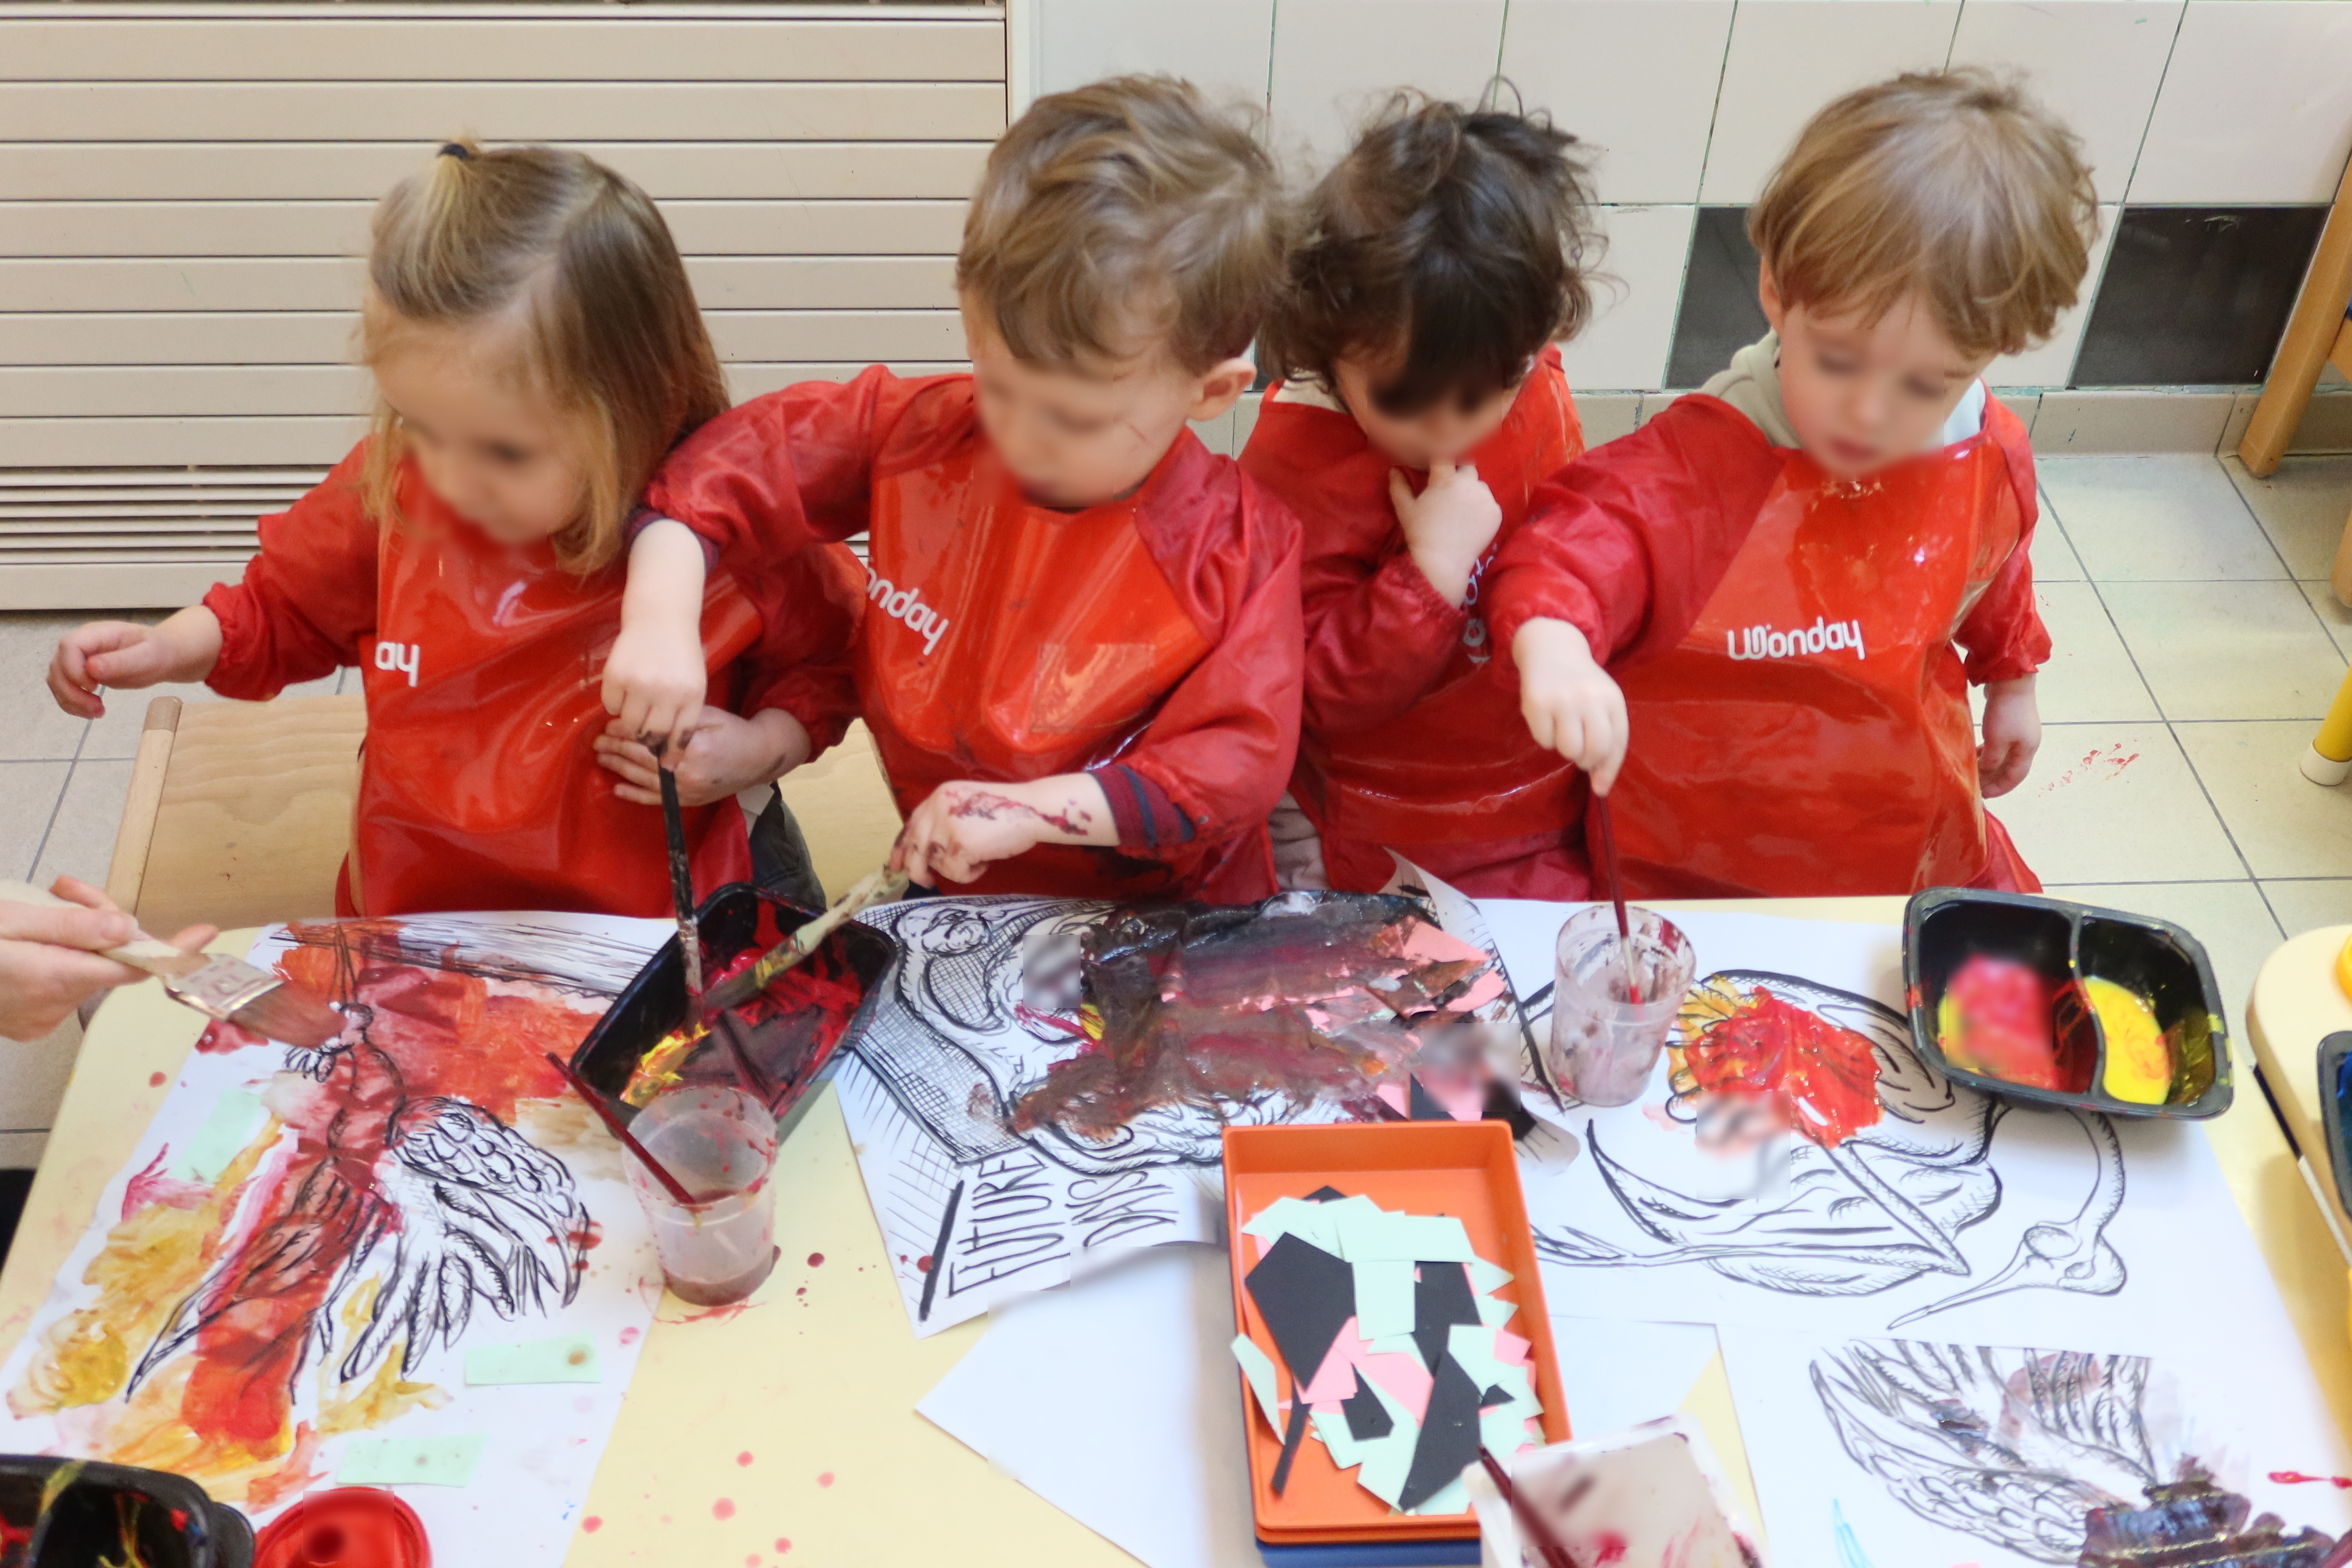 Quatre enfants assis en rang d'oignon peignent avec de gros pinceaux sur des dessins d'oiseaux.